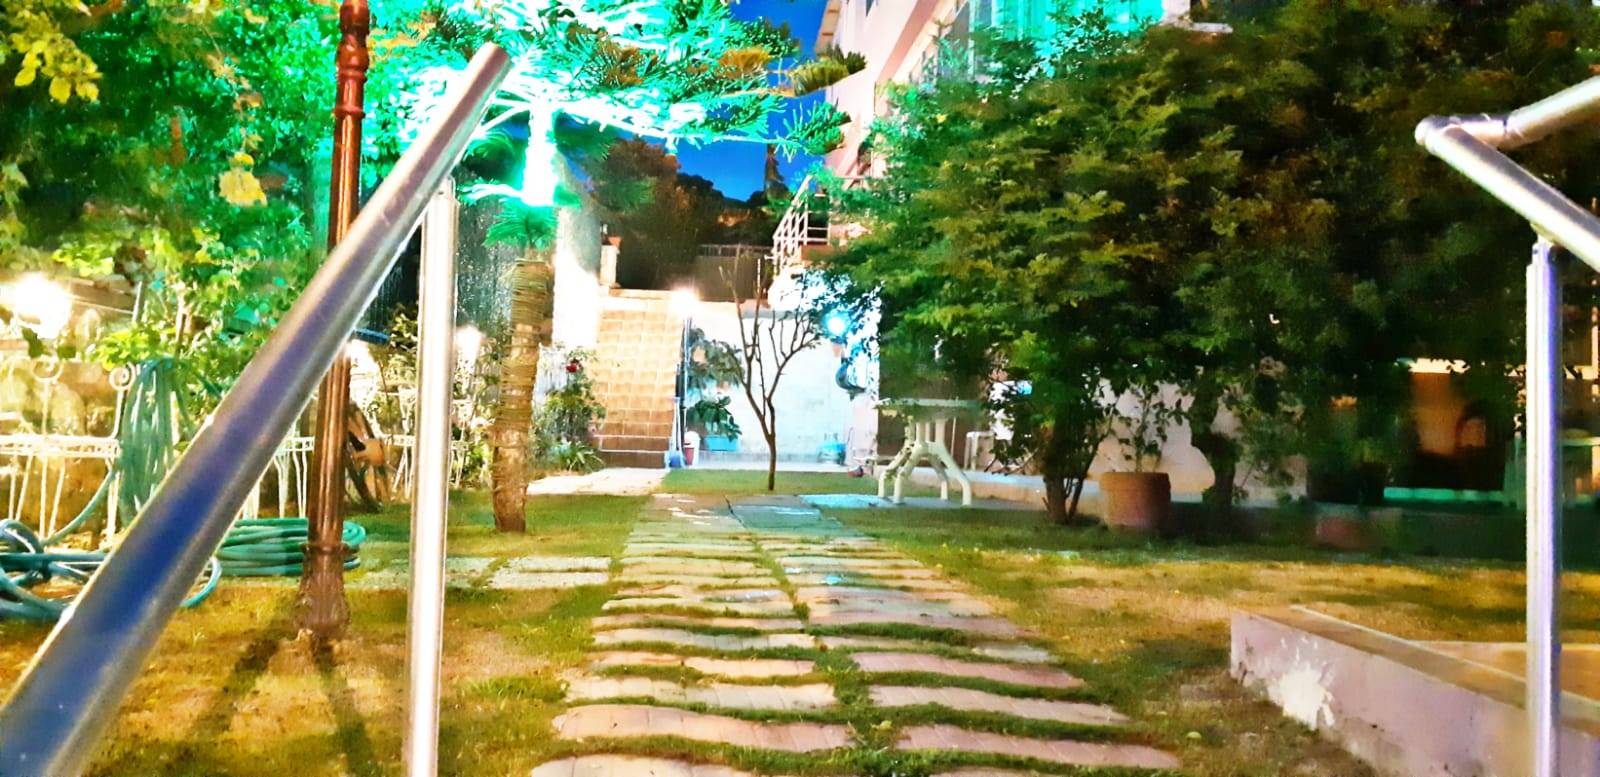 İzmir Çeşme'de Denize Yürüme Mesafesinde, Merkezi Konumda, 5 Kişilik, Özel Bahçeli Daire